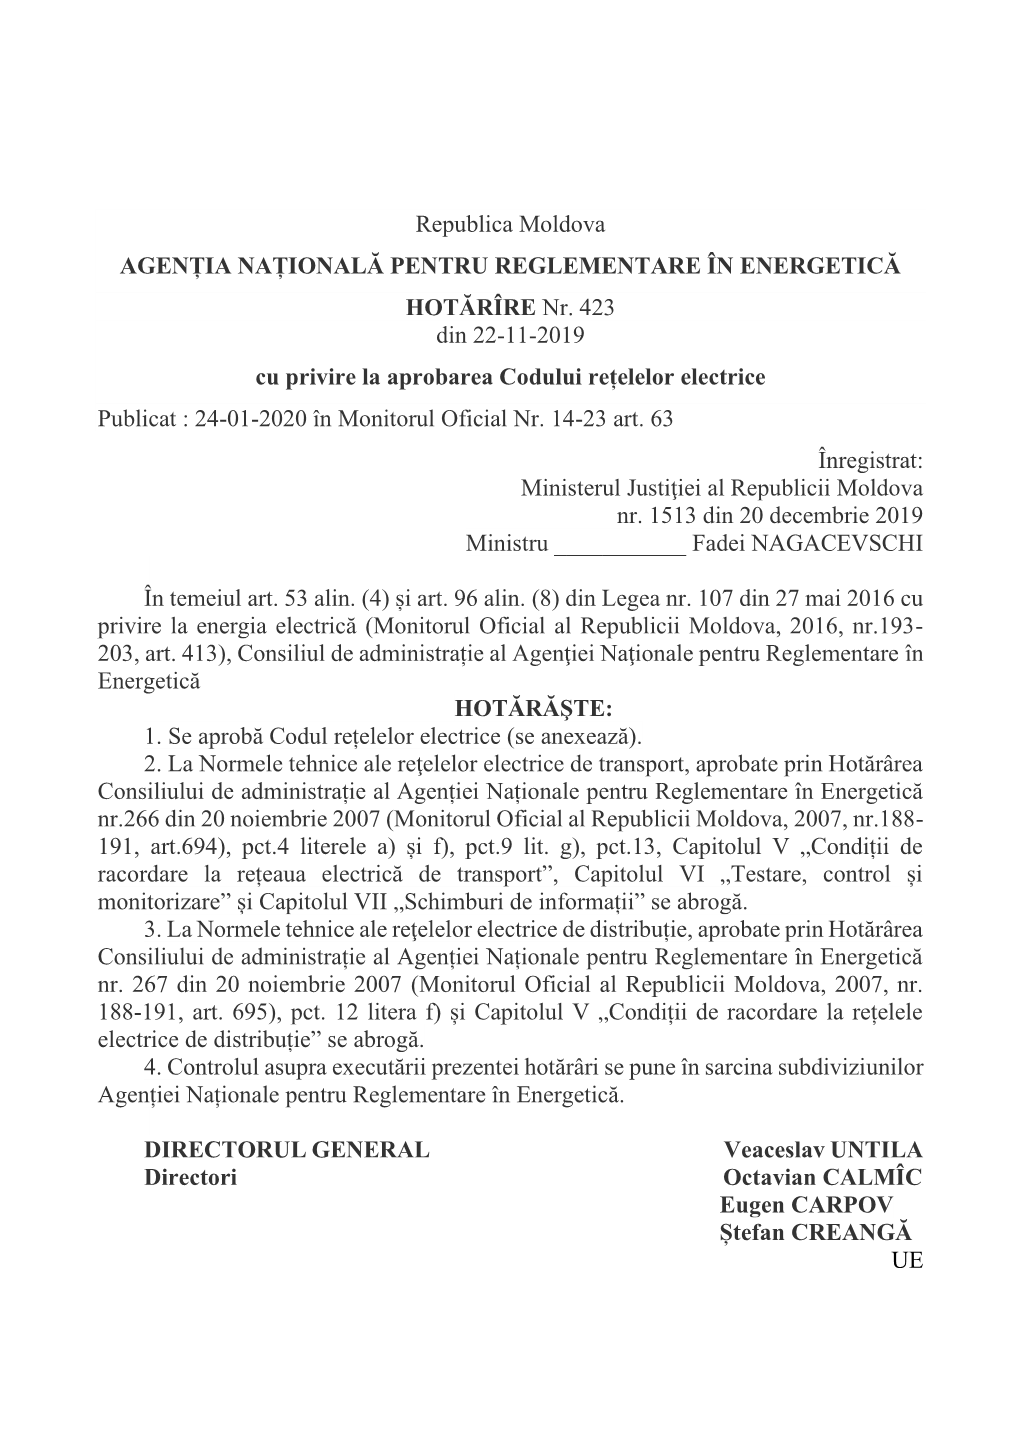 Republica Moldova AGENȚIA NAȚIONALĂ PENTRU REGLEMENTARE ÎN ENERGETICĂ HOTĂRÎRE Nr. 423 Din 22-11-2019 Cu Privire La Aprob